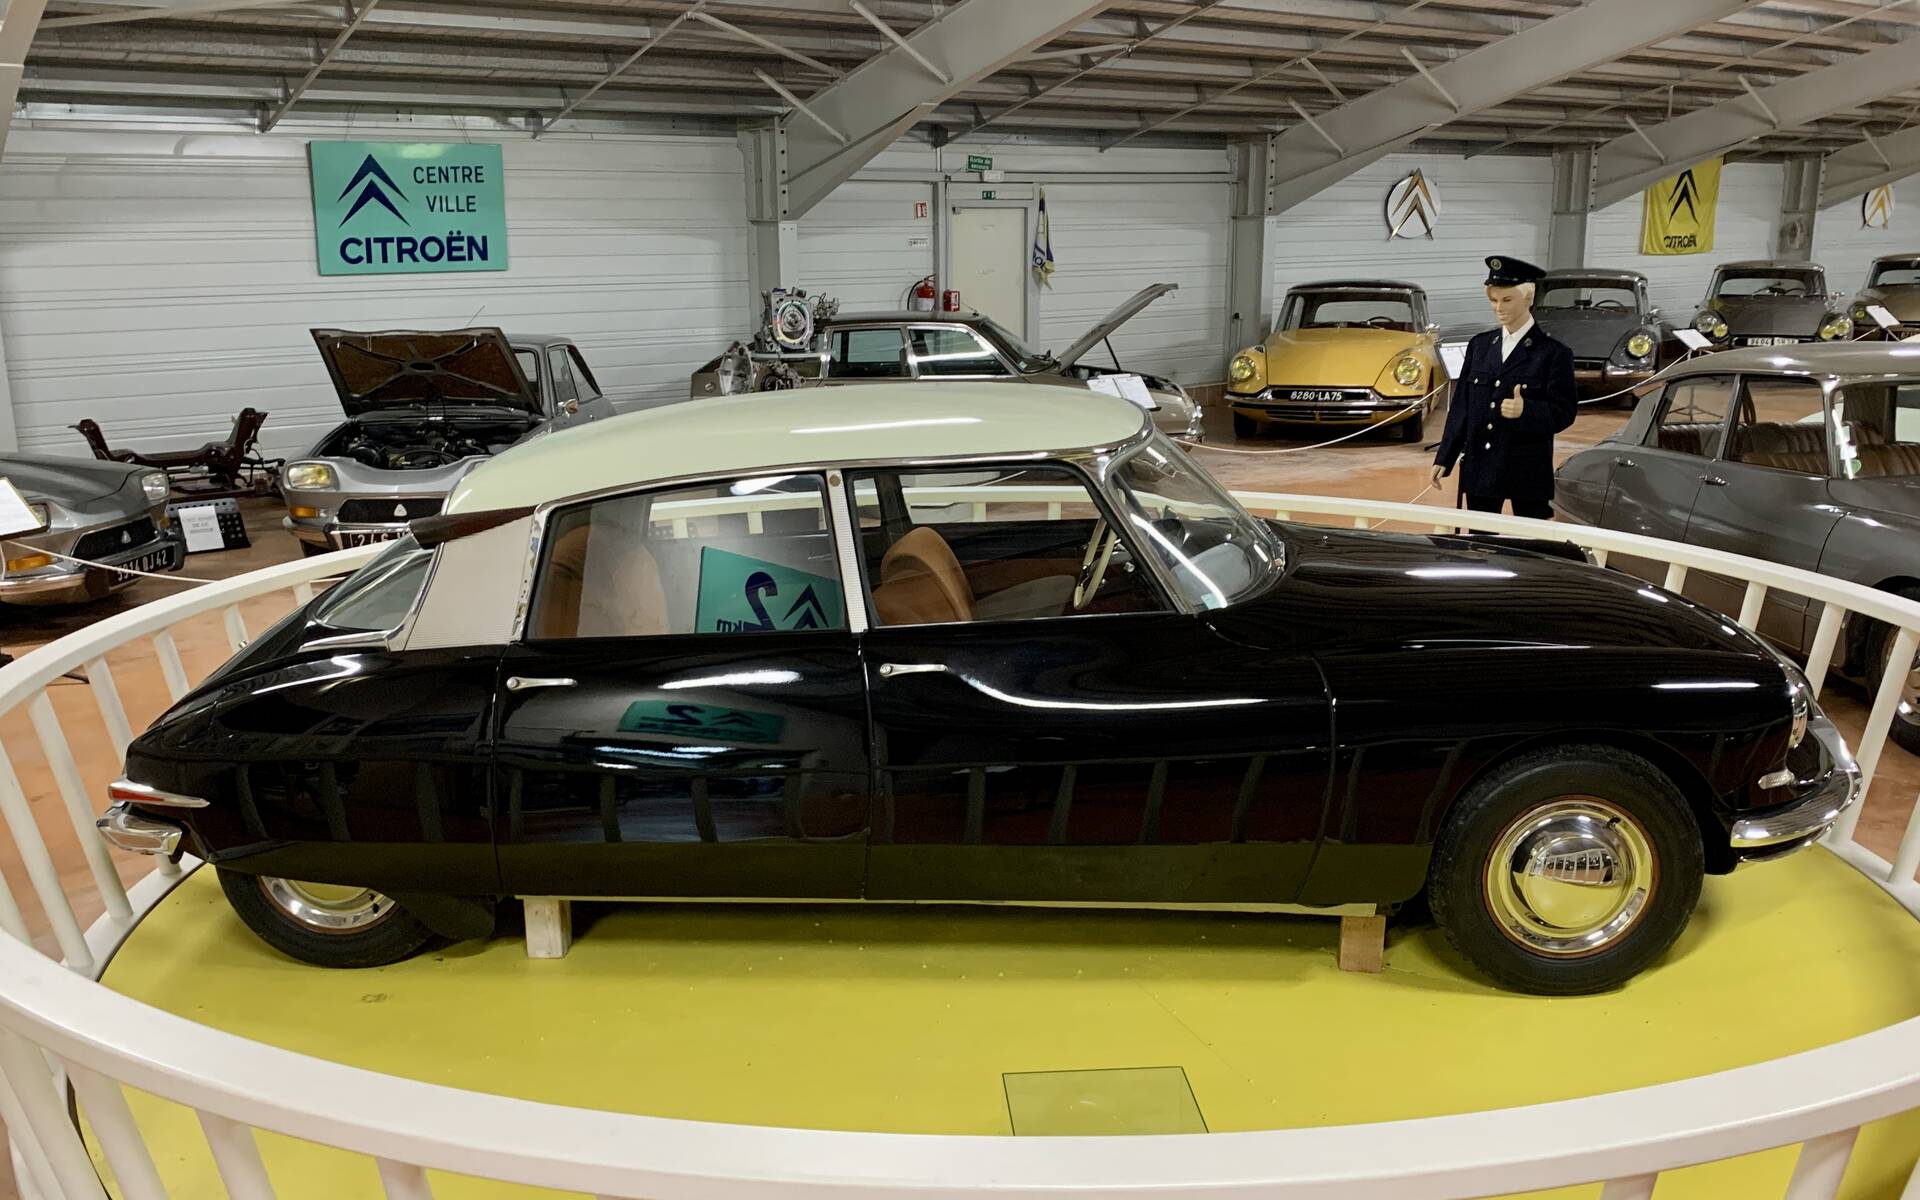 32 - Photos: plus de 100 Citroën d'exception réunies dans un musée en France 543145-photos-plus-de-100-citroen-d-exception-reunies-dans-un-musee-en-france